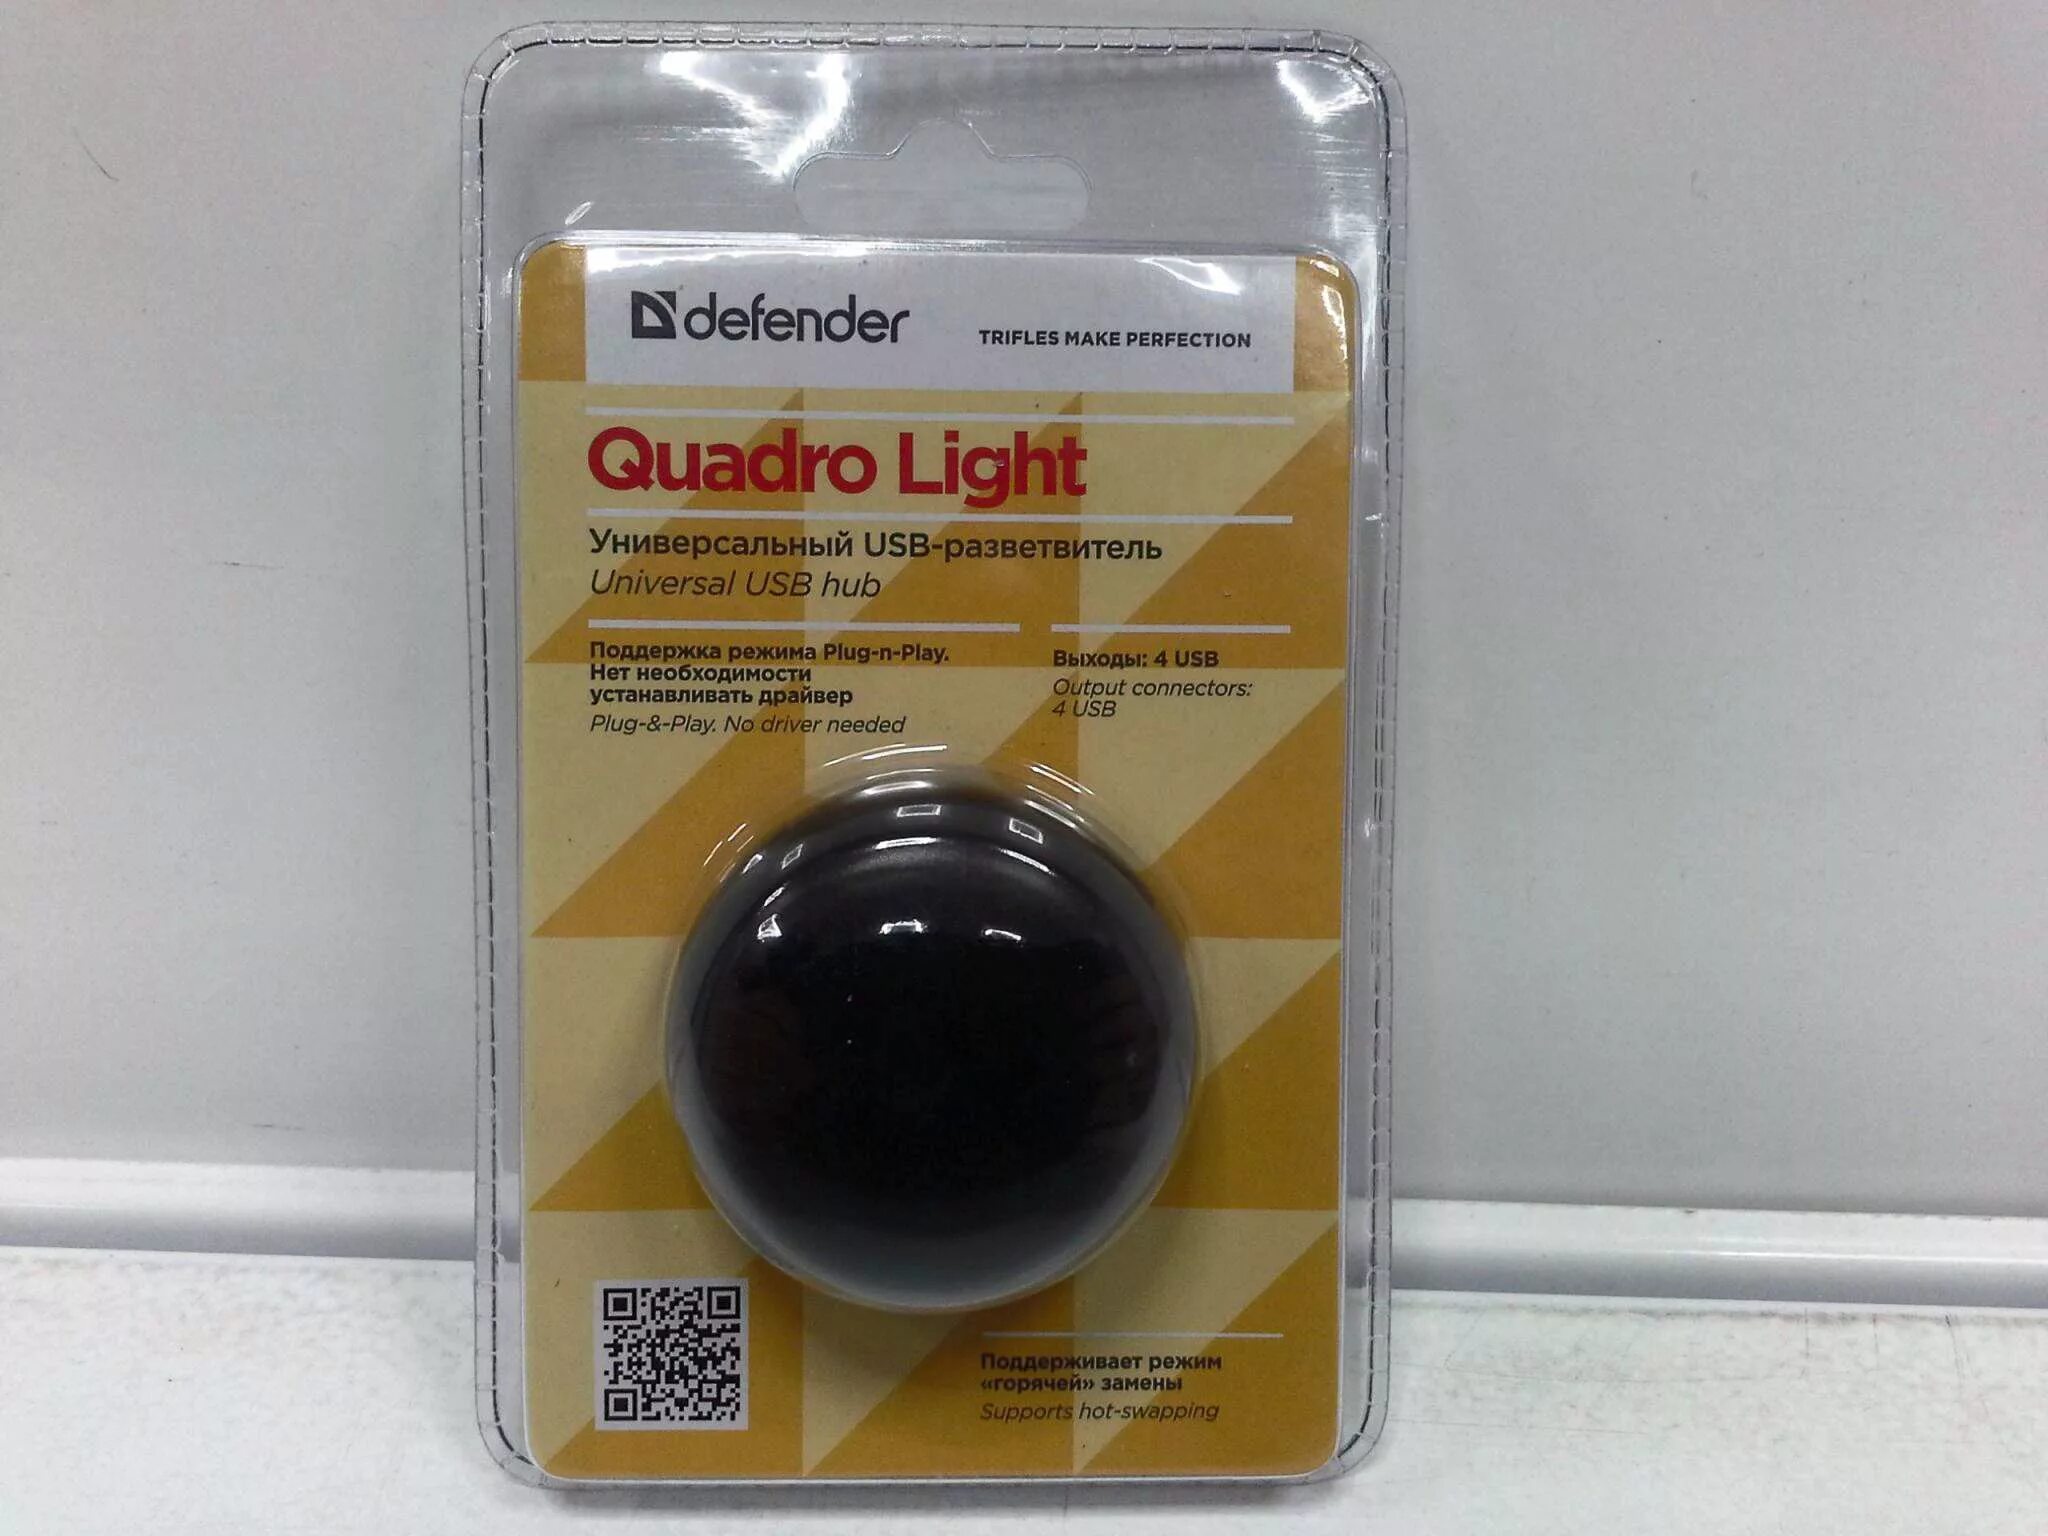 Defender quadro. USB-разветвитель Defender Quadro Light. USB-хаб Defender Quadro Light 4usb черный. Хаб Defender Quadro Light, USB 2.0, 4 порта, 83201. Разветвитель USB Defender Quadro Power (83503).